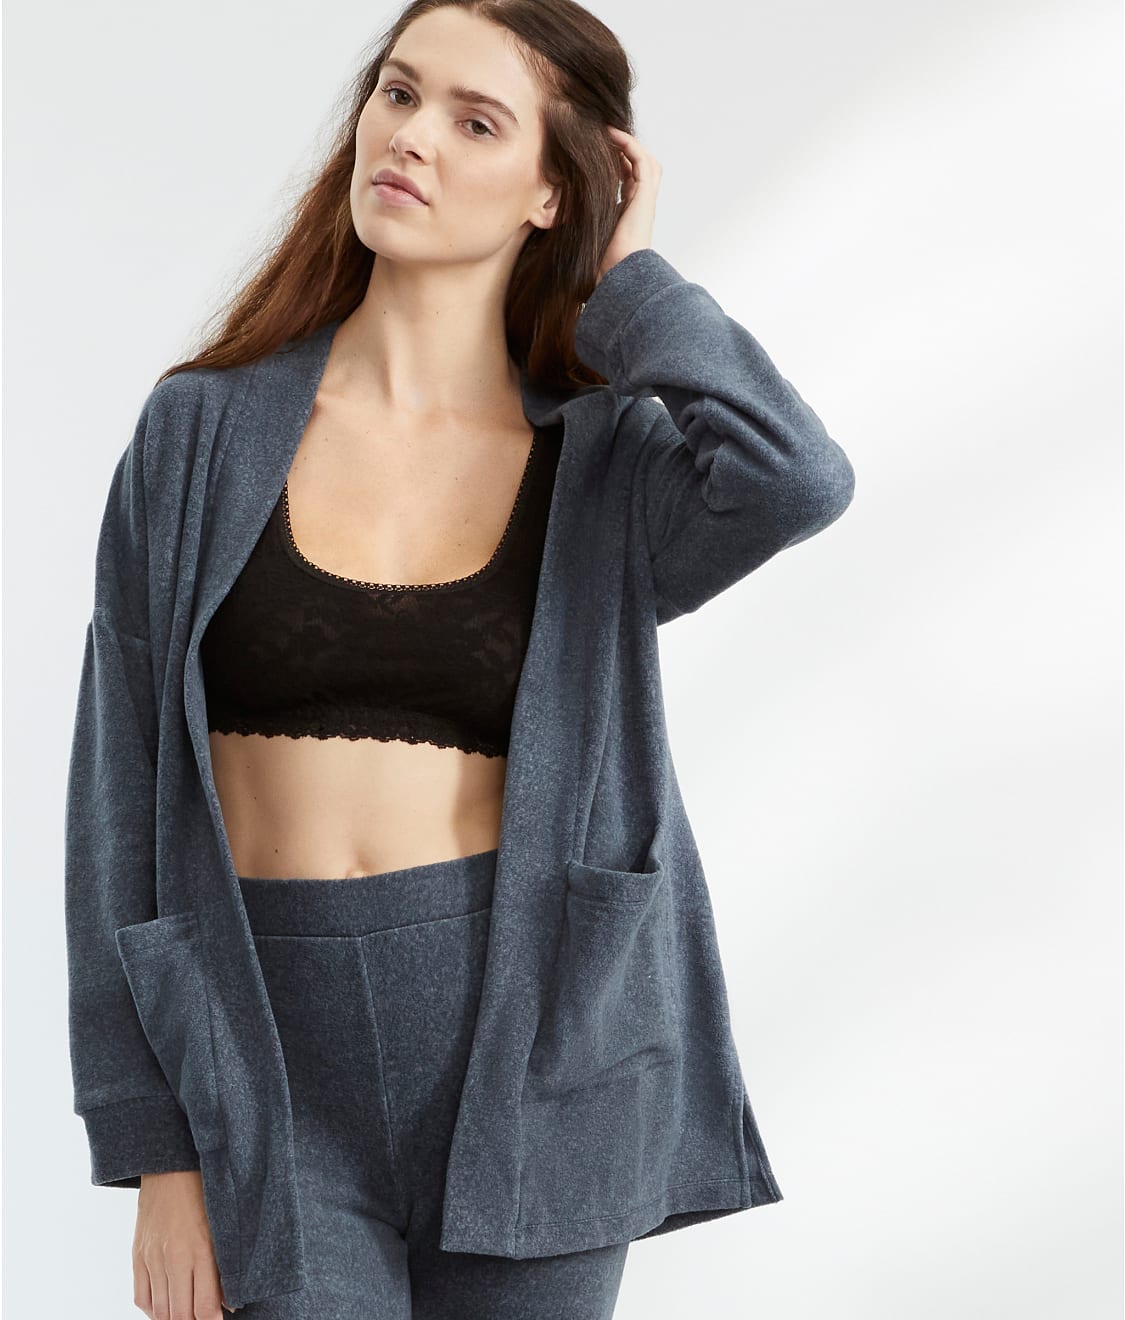 DKNY Sleepwear: Work Hard Chill Hard Fleece Pajama Set Y2022595